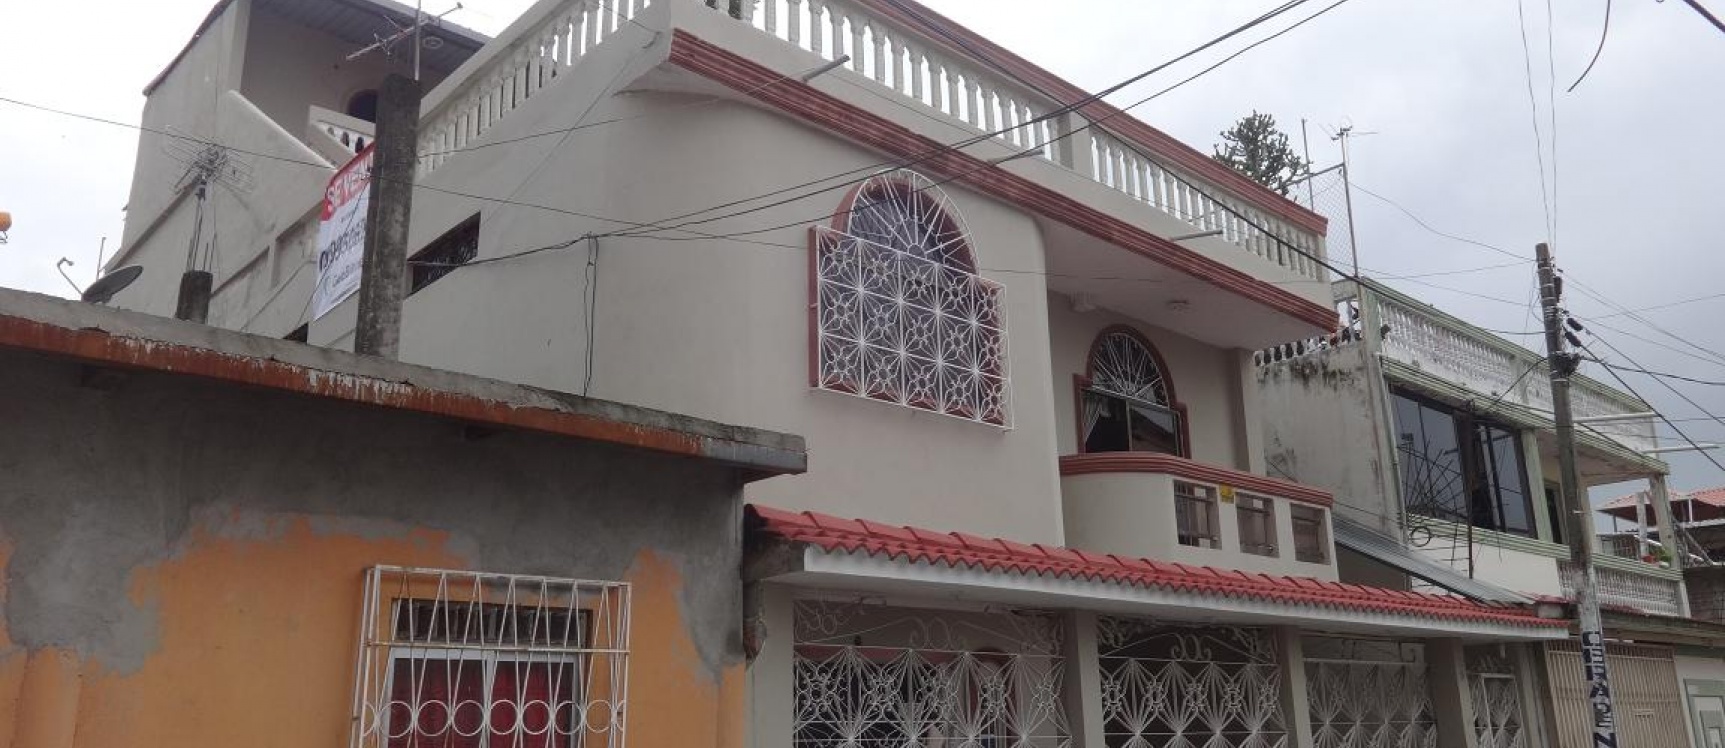 Cdla. Simon Bolivar, Vendo casa rentera cerca de Aeropuerto y Mall Del Sol  | GeoBienes